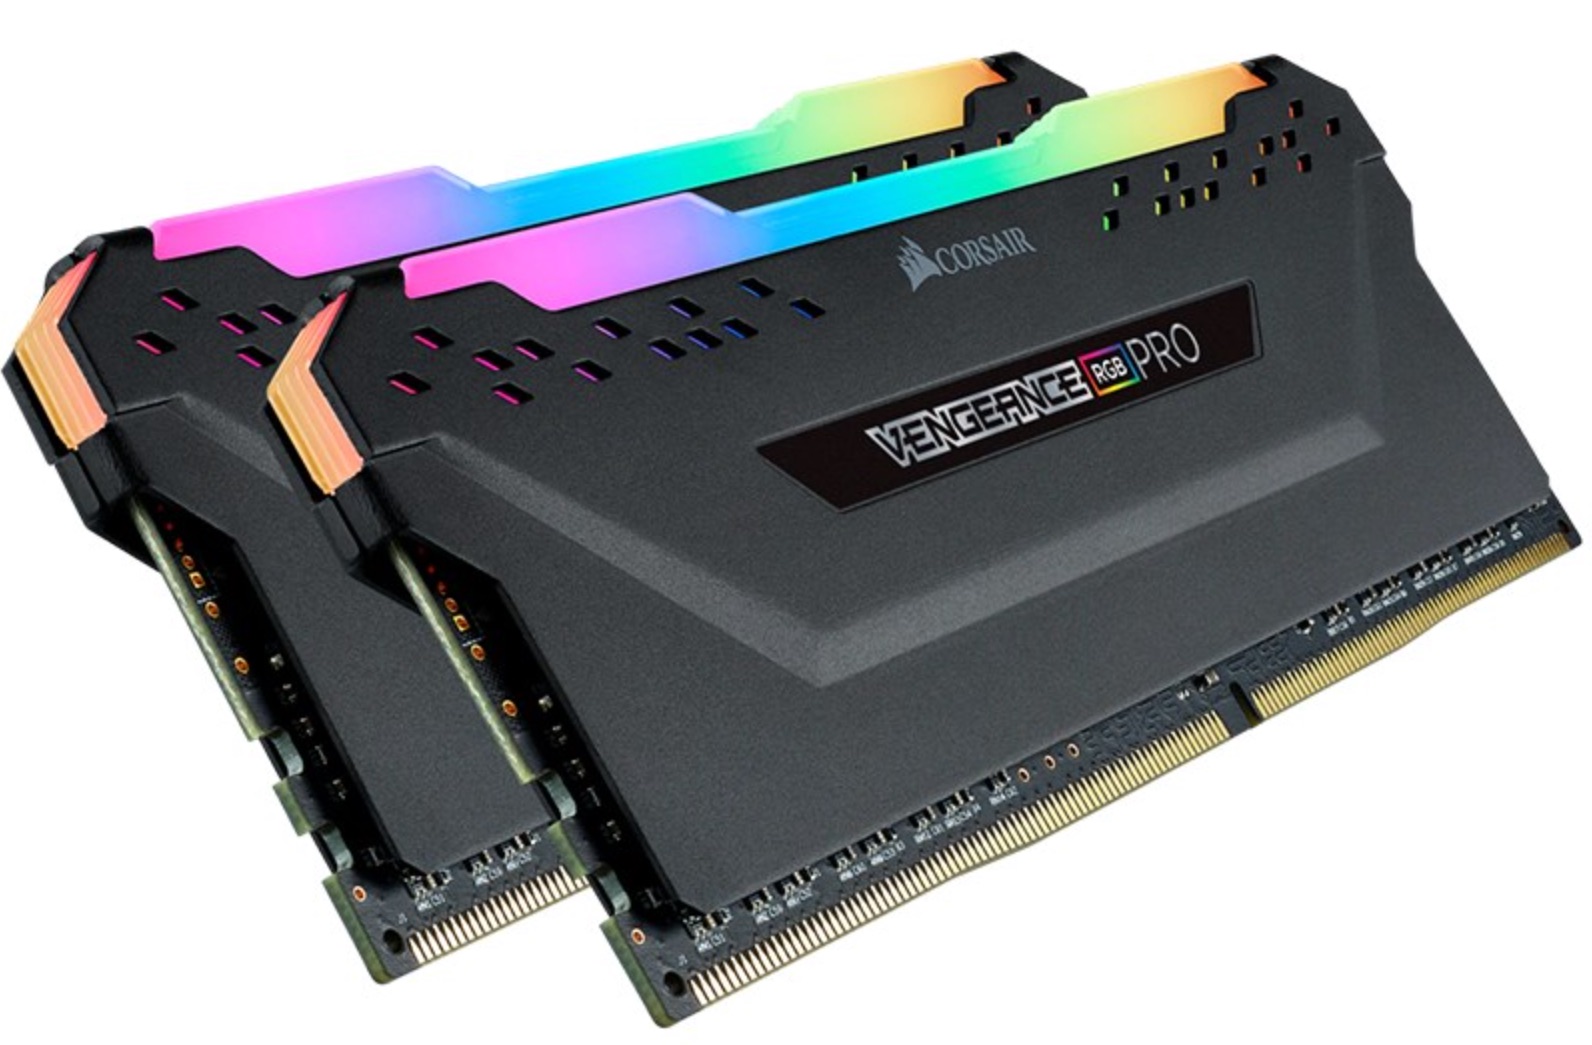 Corsair Vengeance RGB PRO 64GB (2x 32GB) DDR4 3200MHz Memory – Black